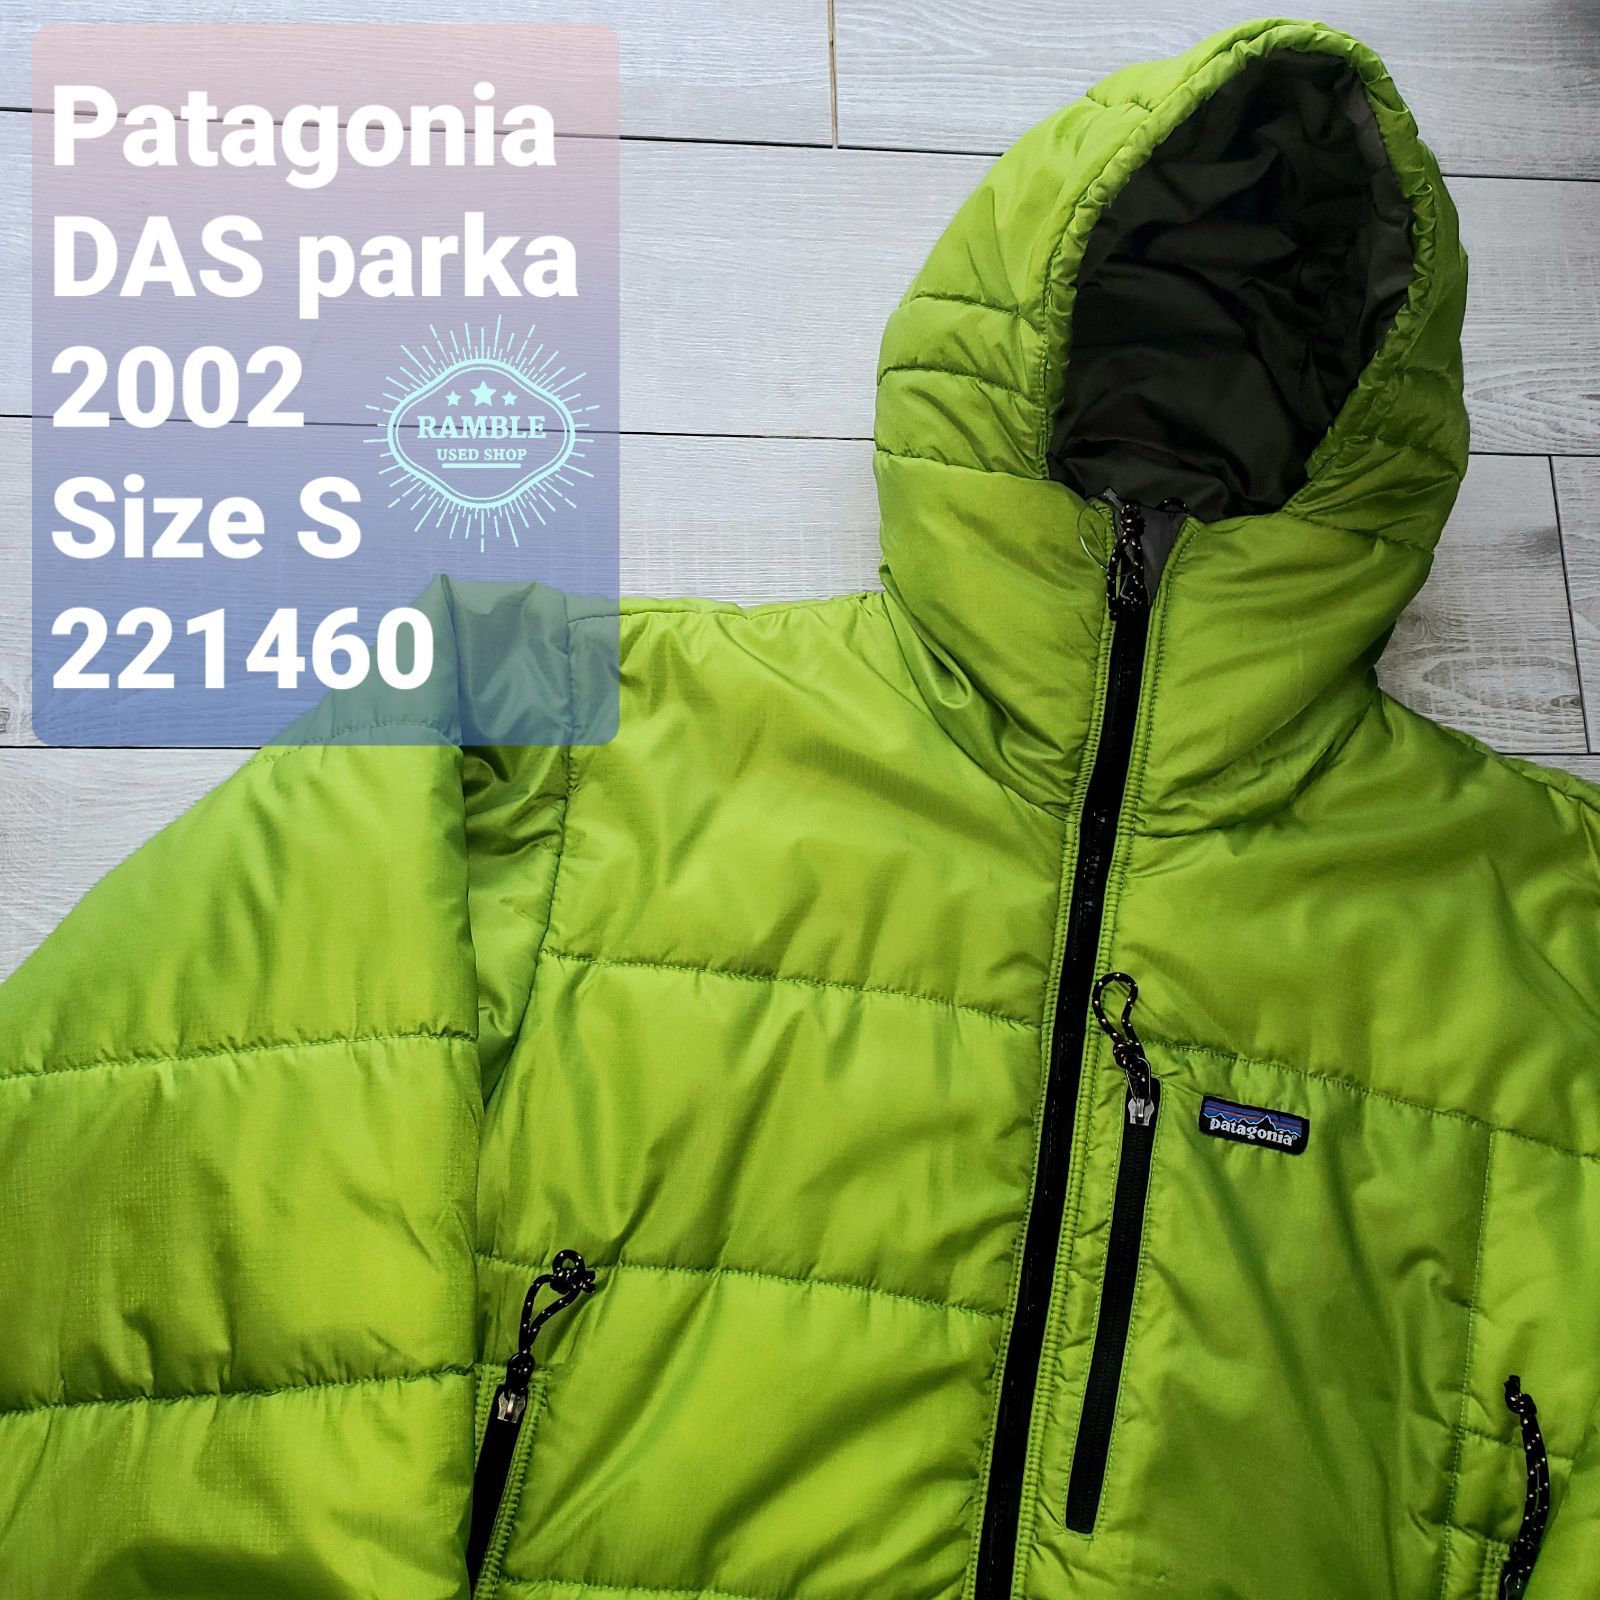 ［訳あり］Patagonia das parka ダスパーカ ゲッコーグリーン